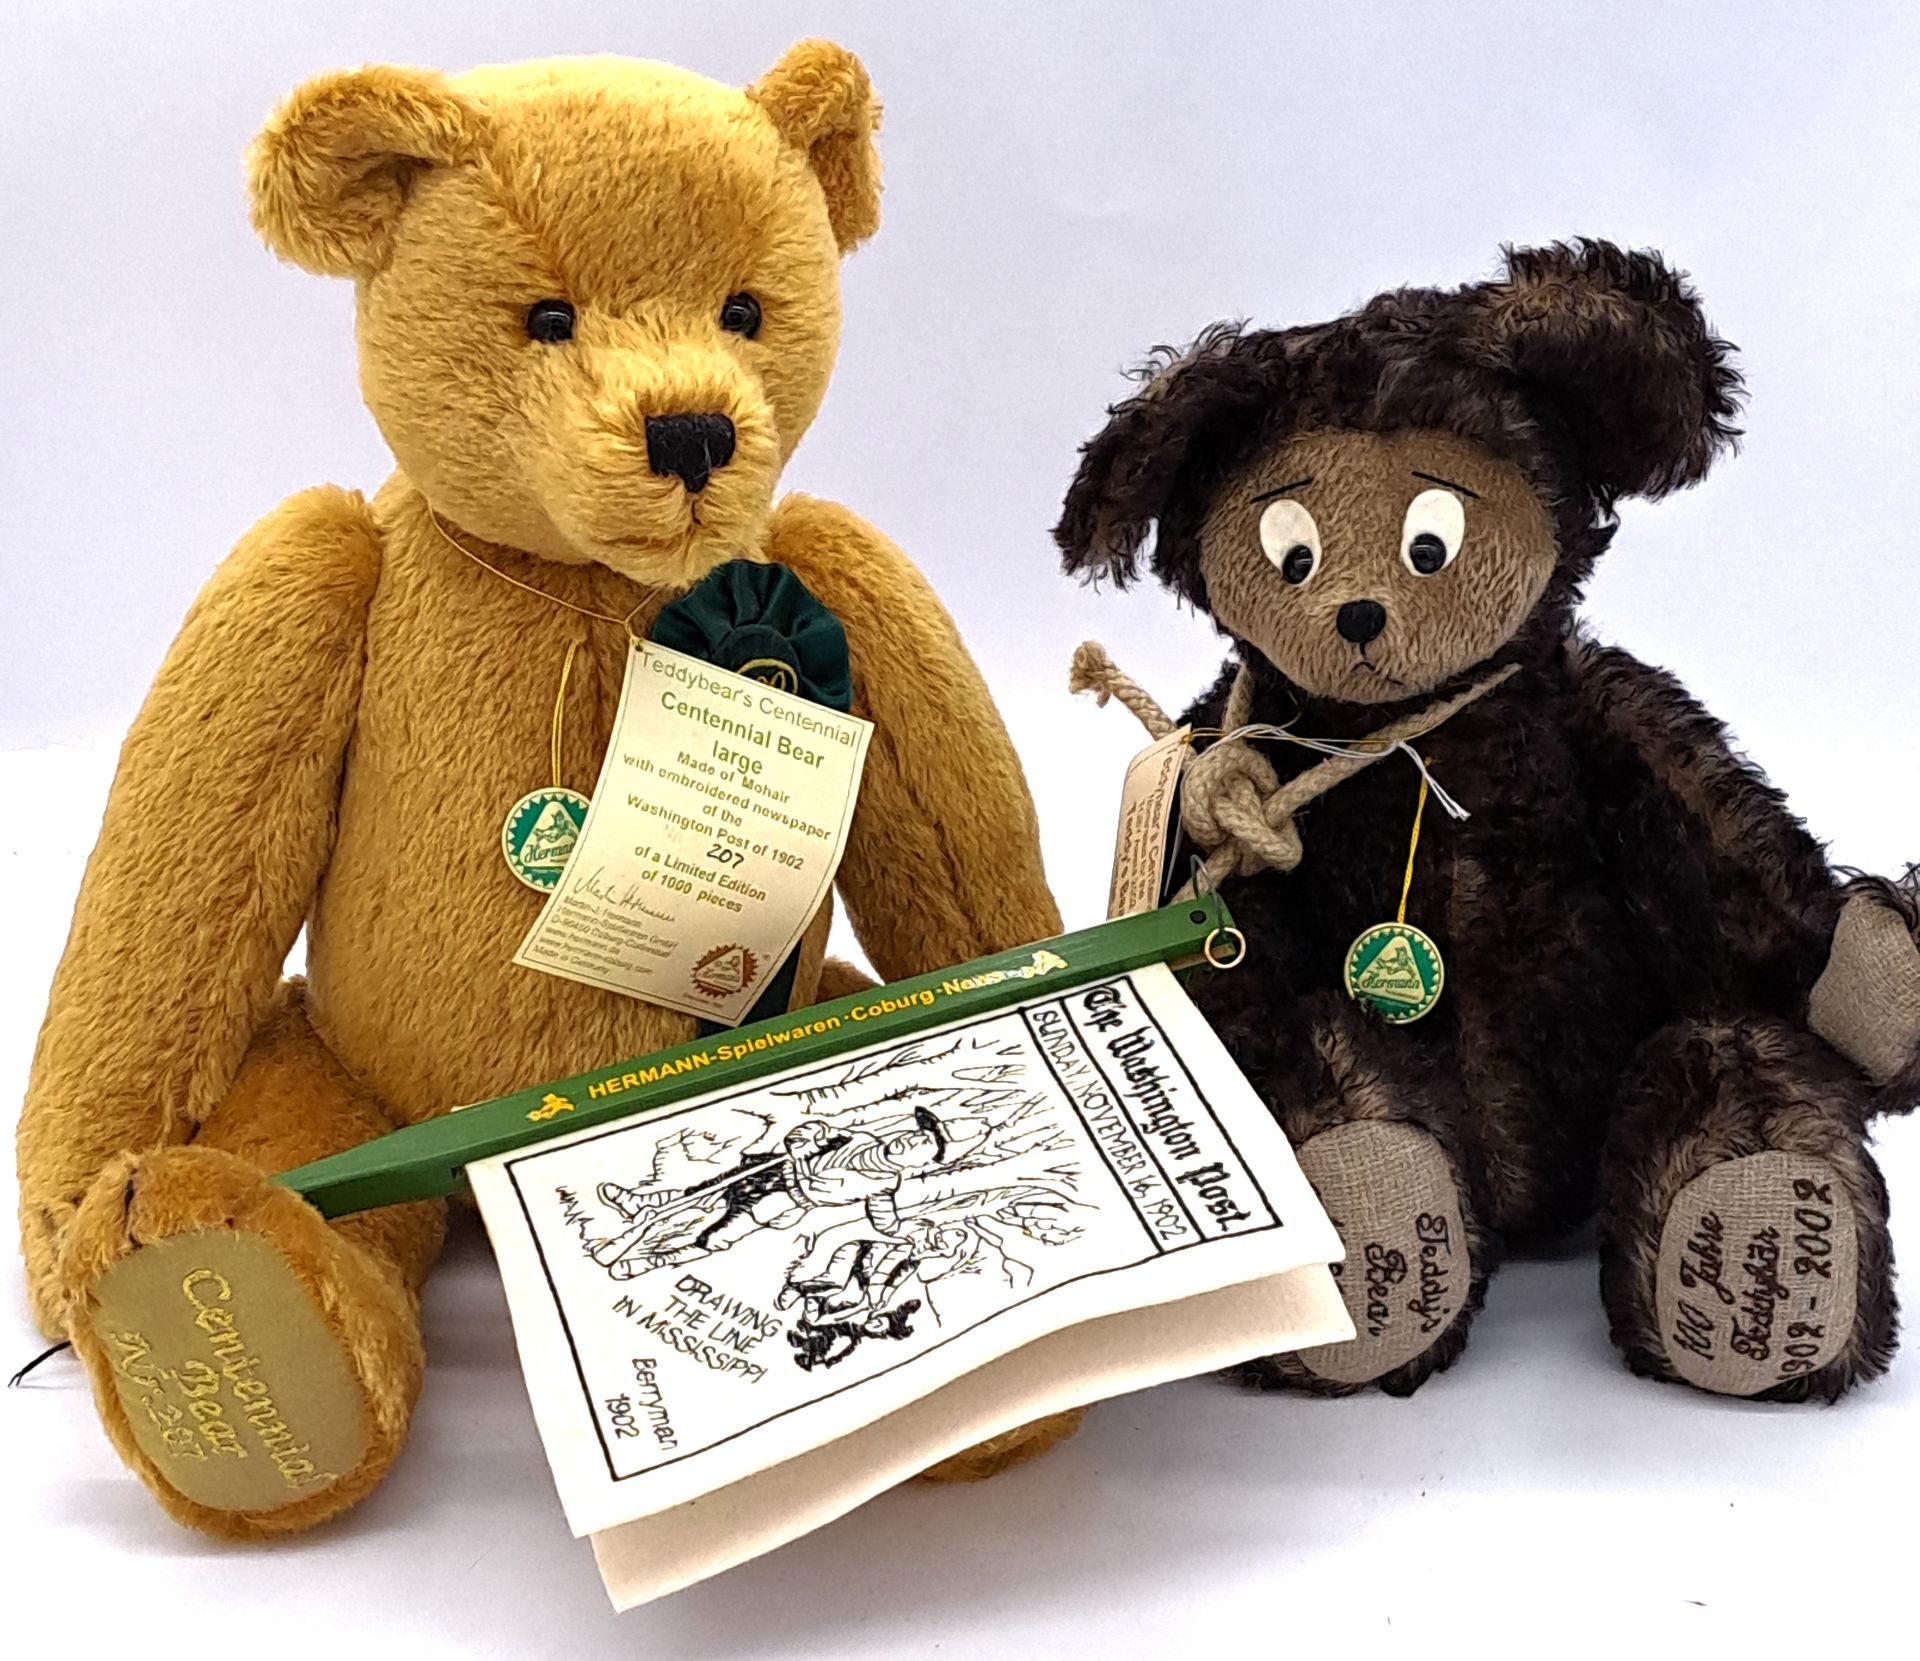 Hermann-Spielwaren pair of teddy bears